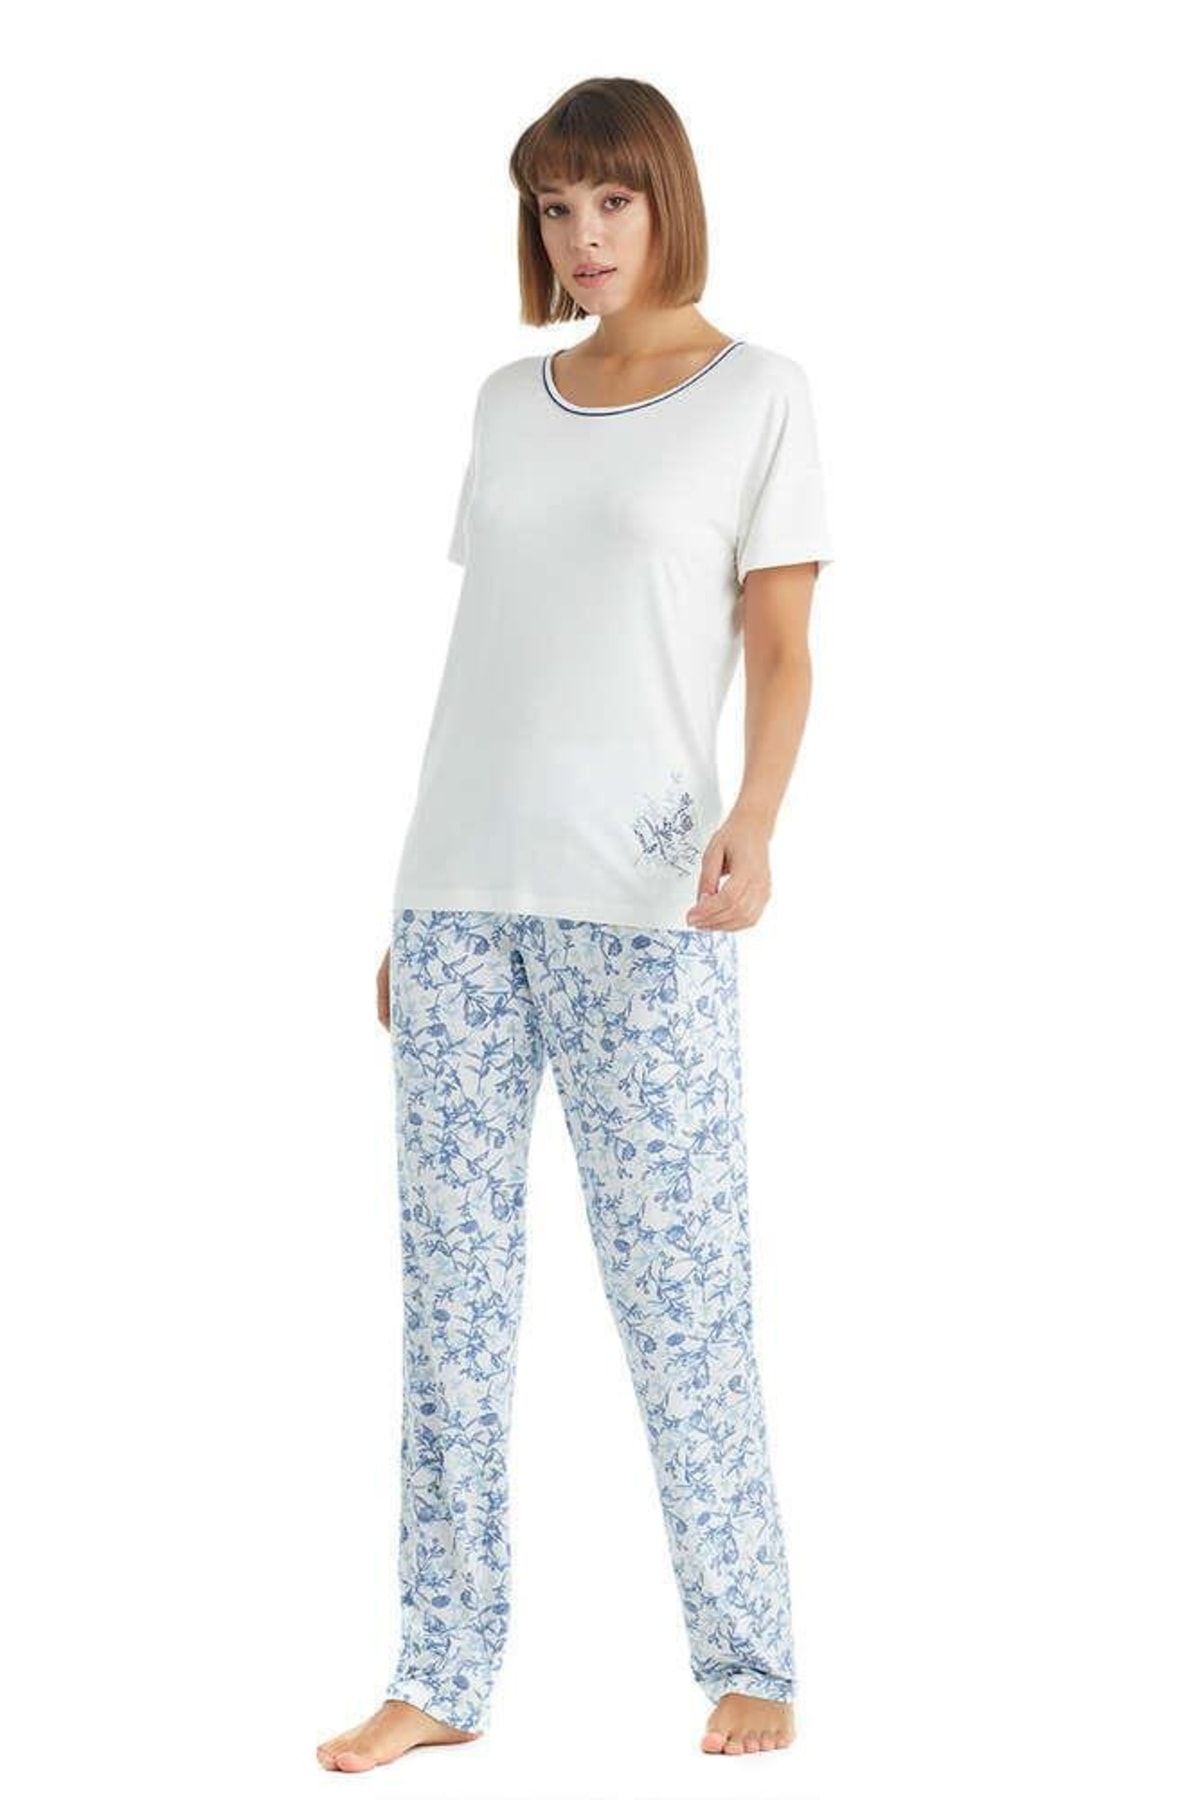 Blackspade Yuvarlak Yaka Düz Beyaz Kadın Pijama Takımı 51020